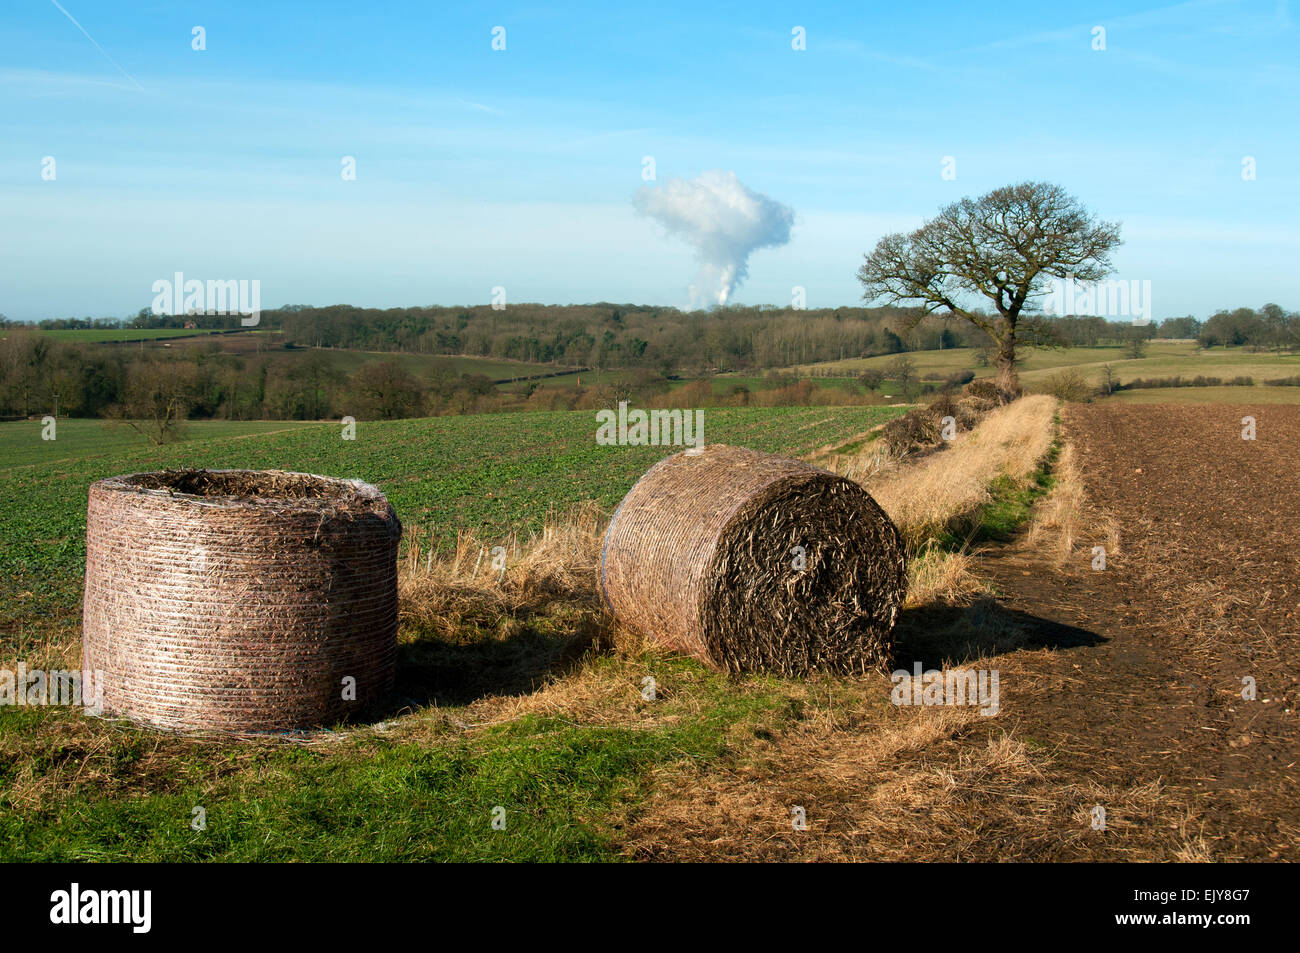 Bottes de foin dans un champ, Dorset, UK. Dans la distance est la vapeur s'élevant de la Ratcliffe-on-Soar power station. Banque D'Images